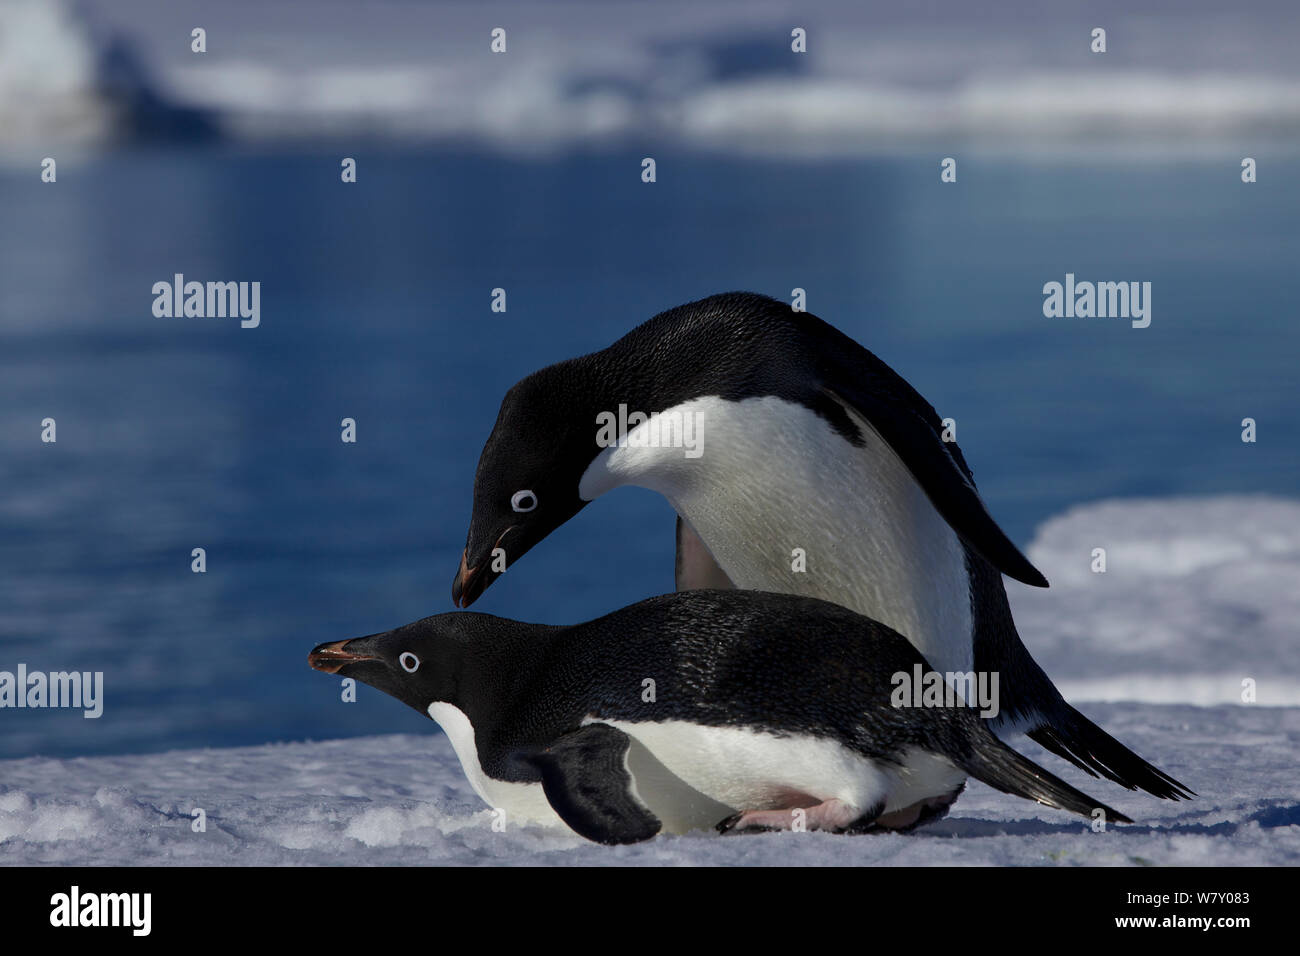 Adelie penguins (Pygoscelis adeliae) copulating, Antarctica. Stock Photo